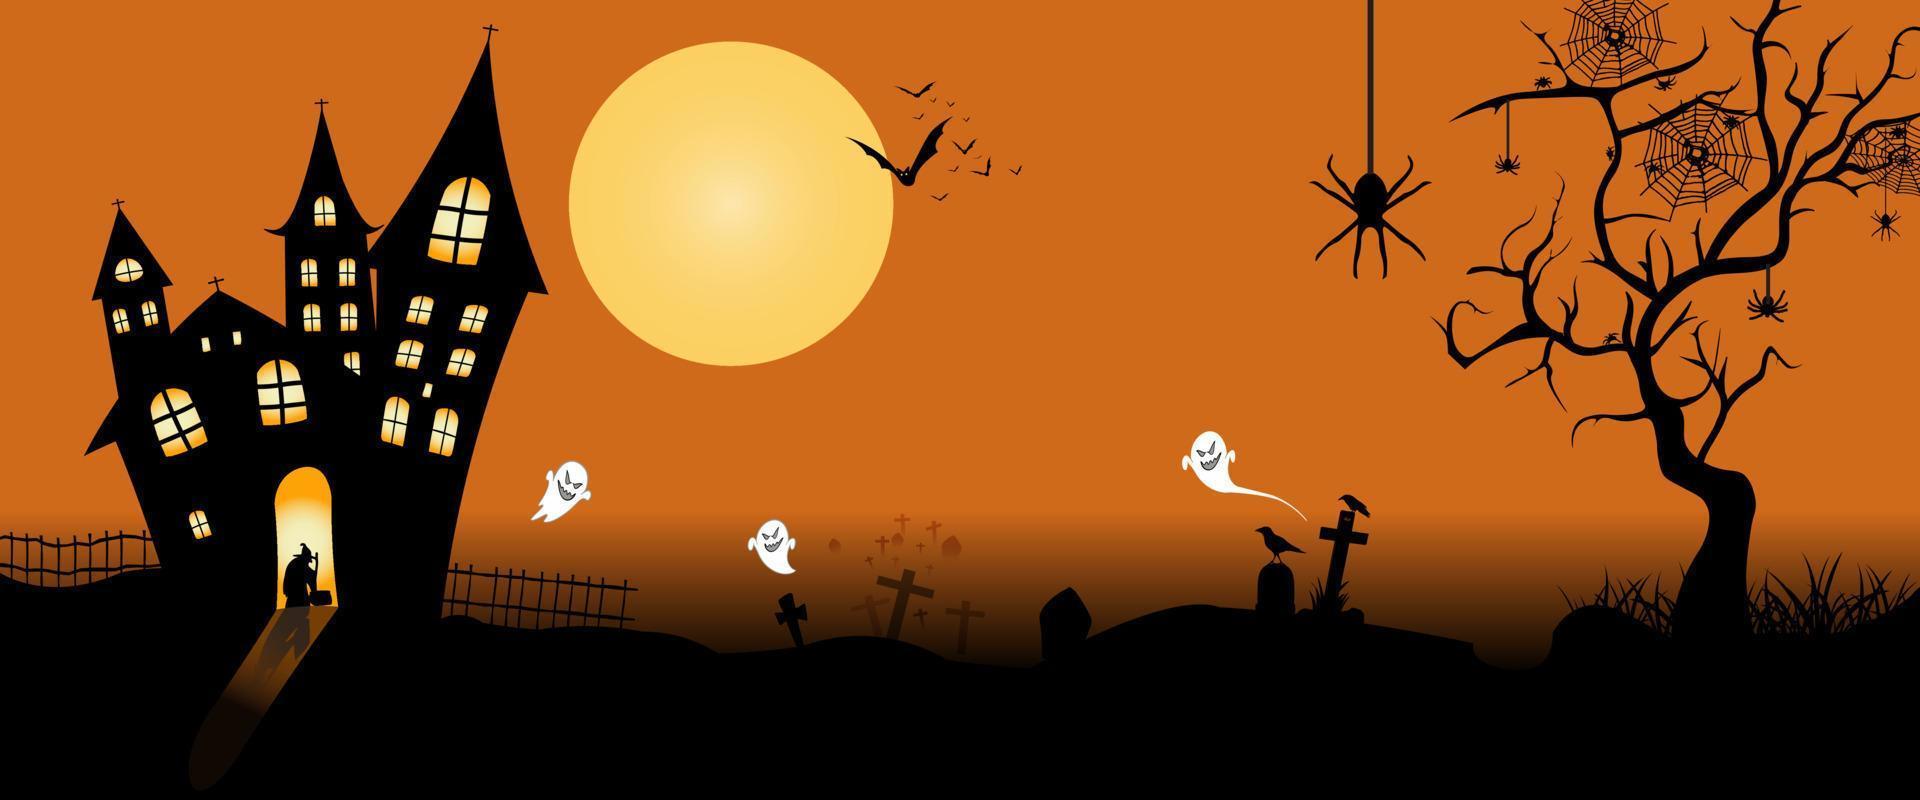 fondo de concepto de halloween o fondo de invitación de fiesta con una noche de luna y un castillo. ilustración vectorial vector